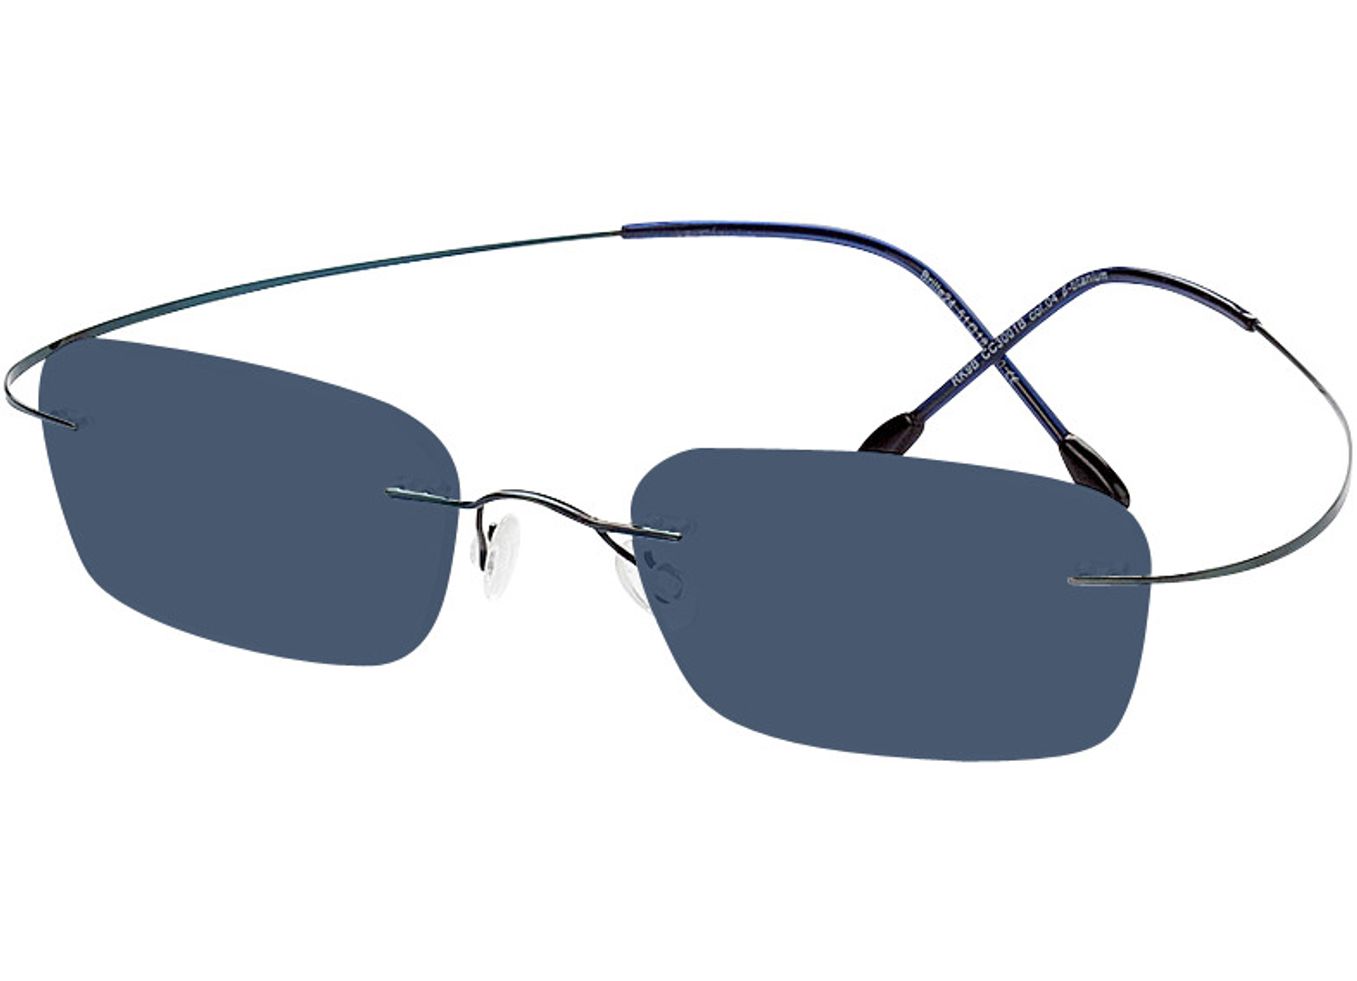 Mackay - blau Sonnenbrille ohne Sehstärke, Randlos, Rechteckig von Brille24 Collection